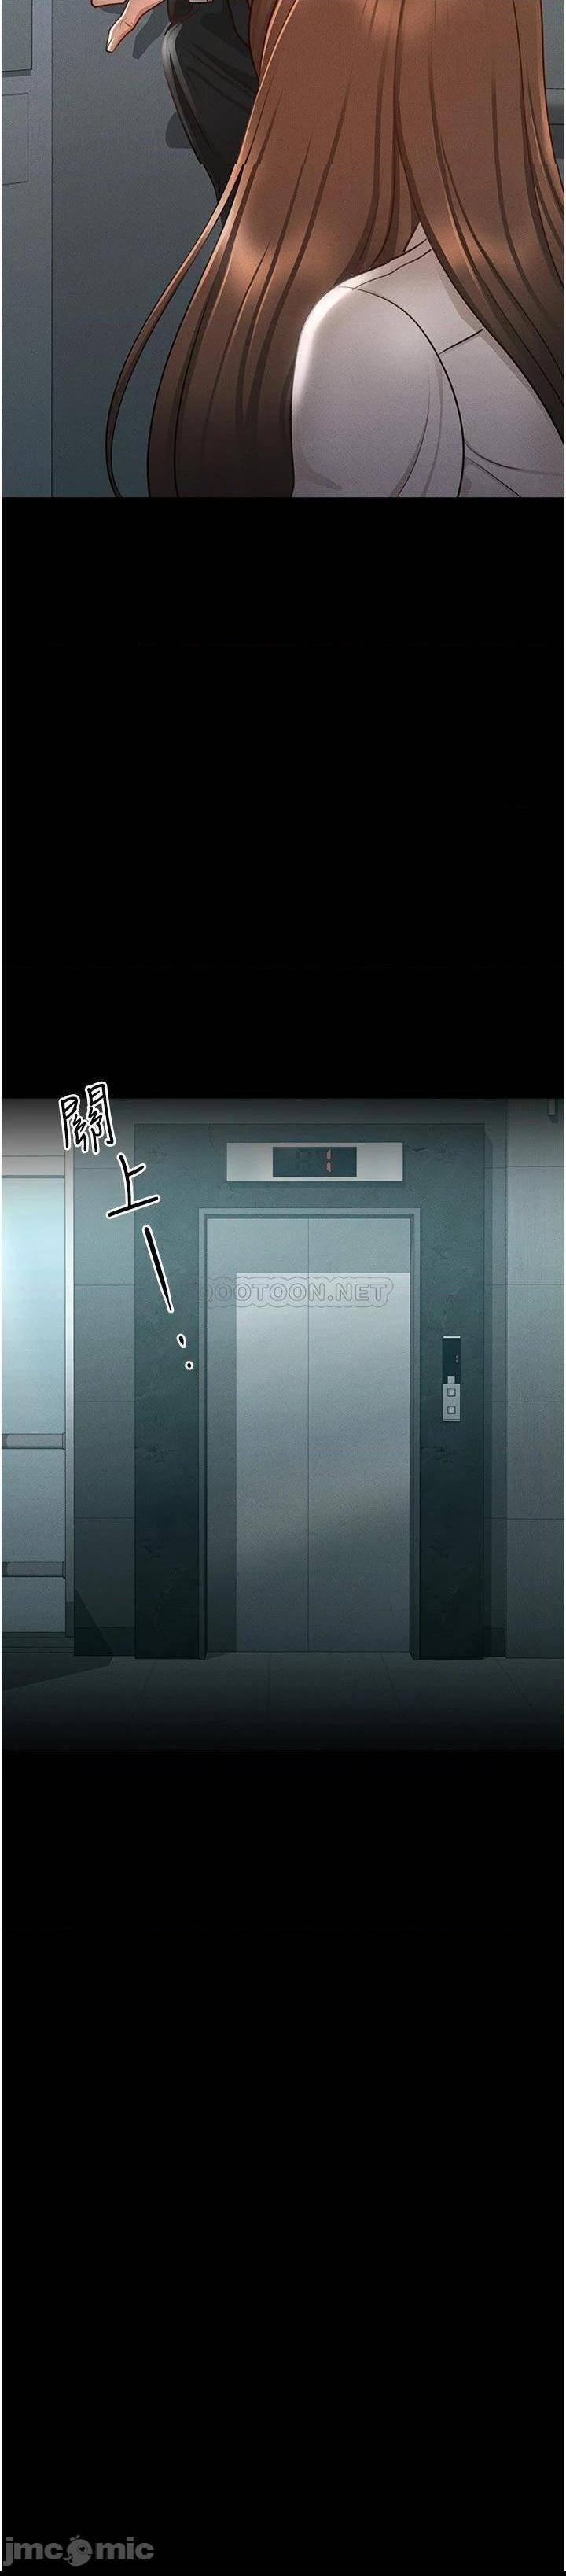 《超级公务员》漫画 第12话 在人挤人的电梯里硬上!